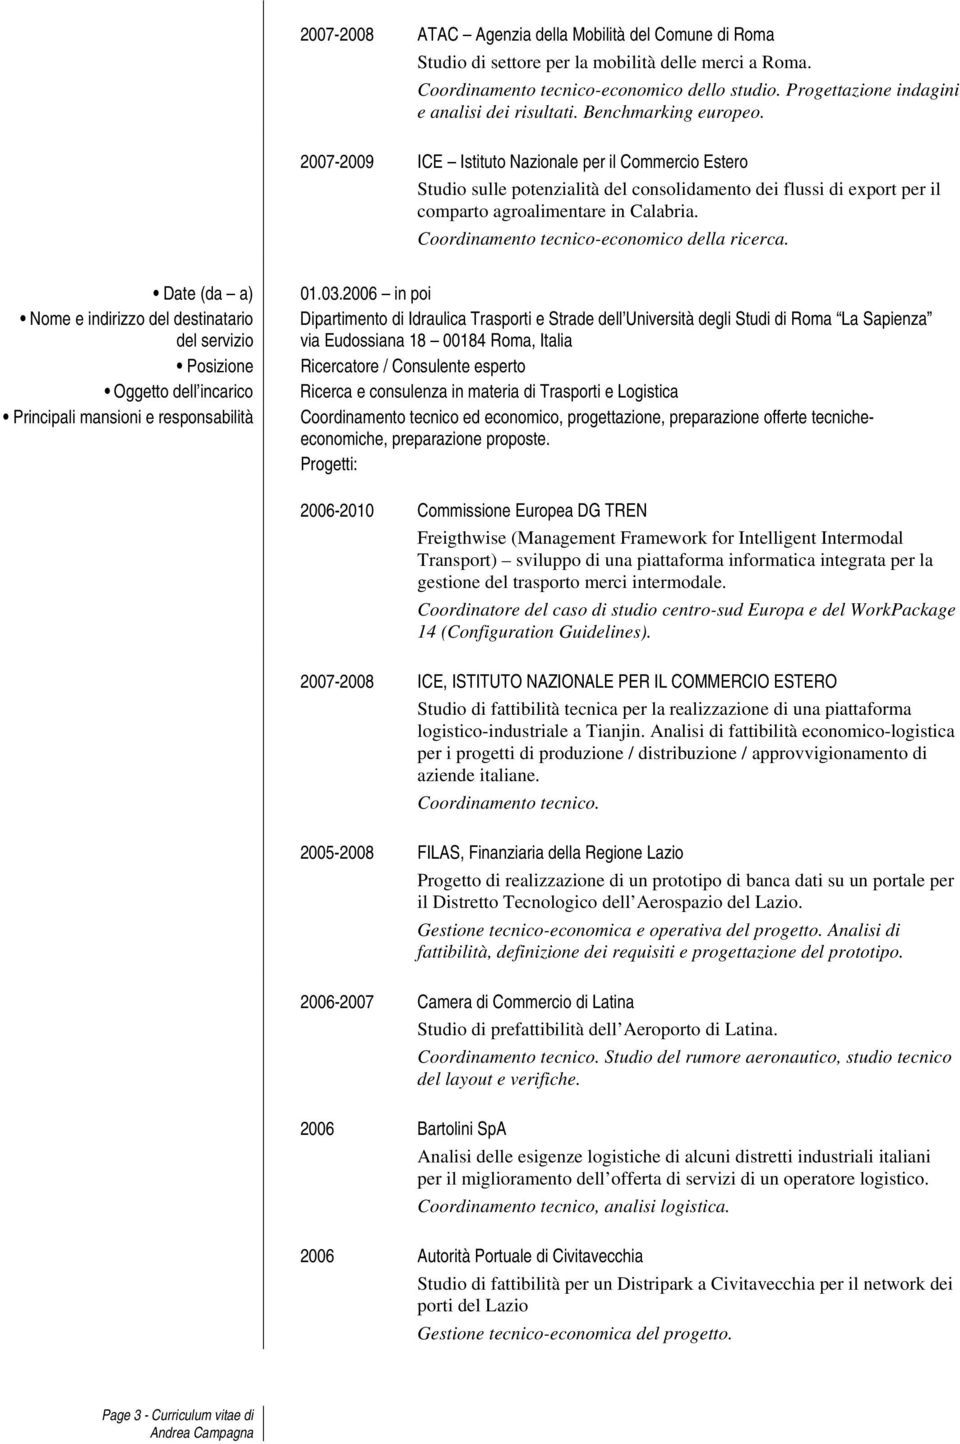 2007-2009 ICE Istituto Nazionale per il Commercio Estero Studio sulle potenzialità del consolidamento dei flussi di export per il comparto agroalimentare in Calabria.